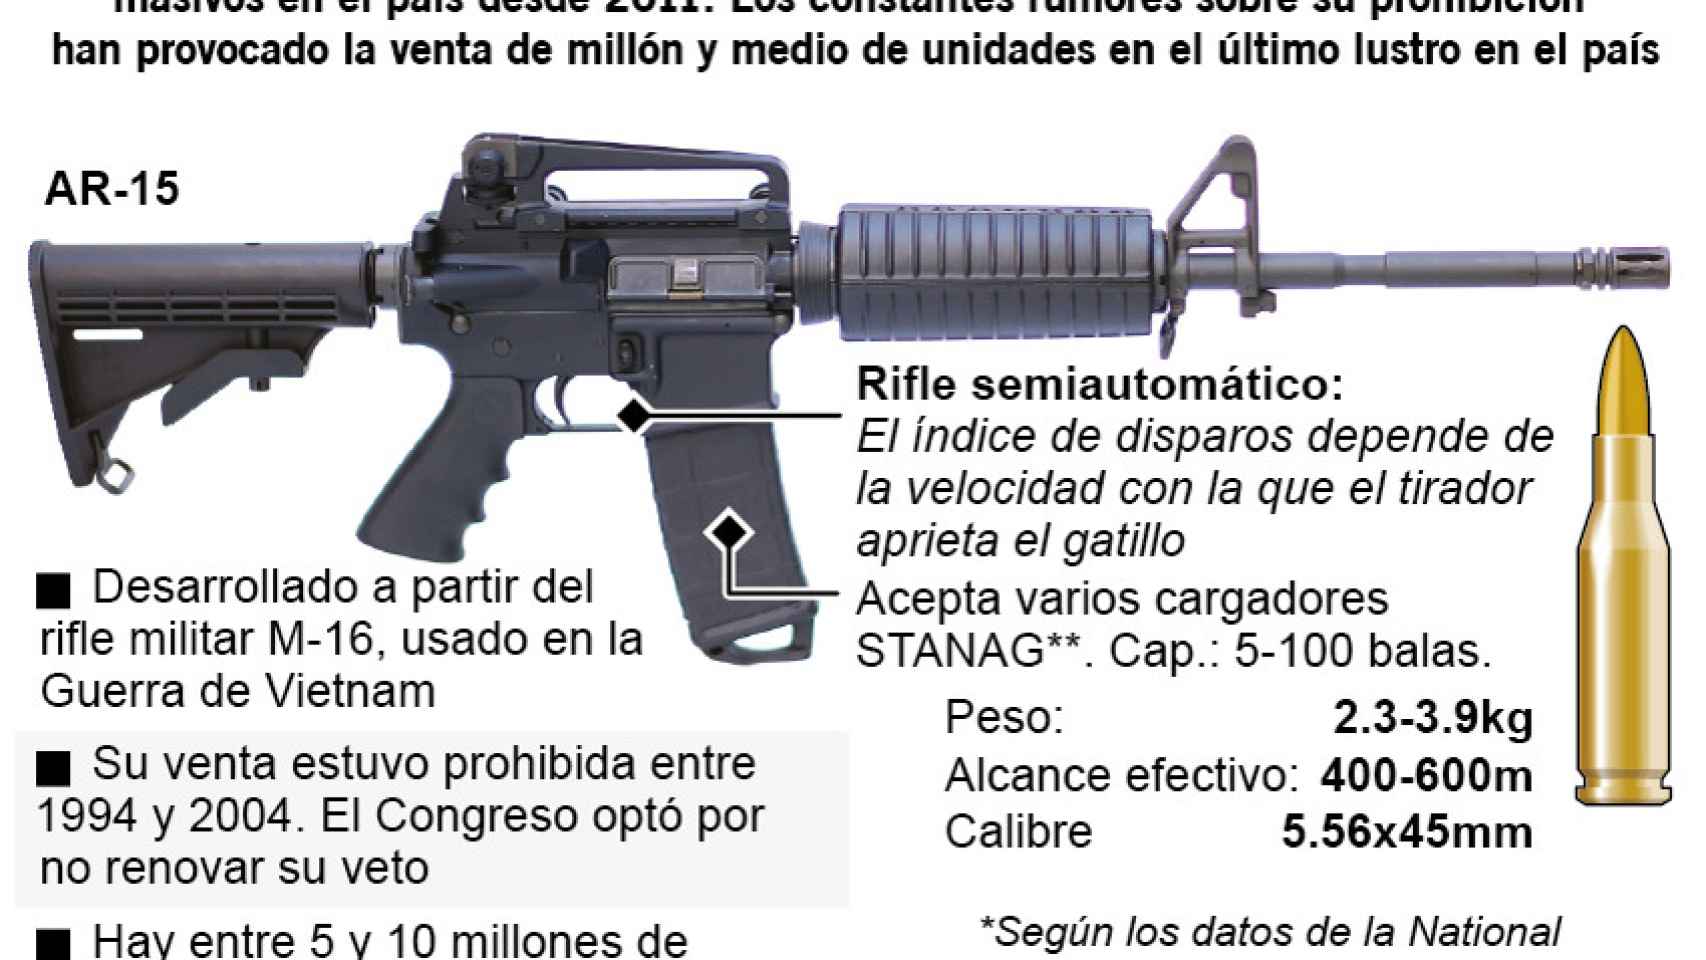 Las características del rifle AR-15